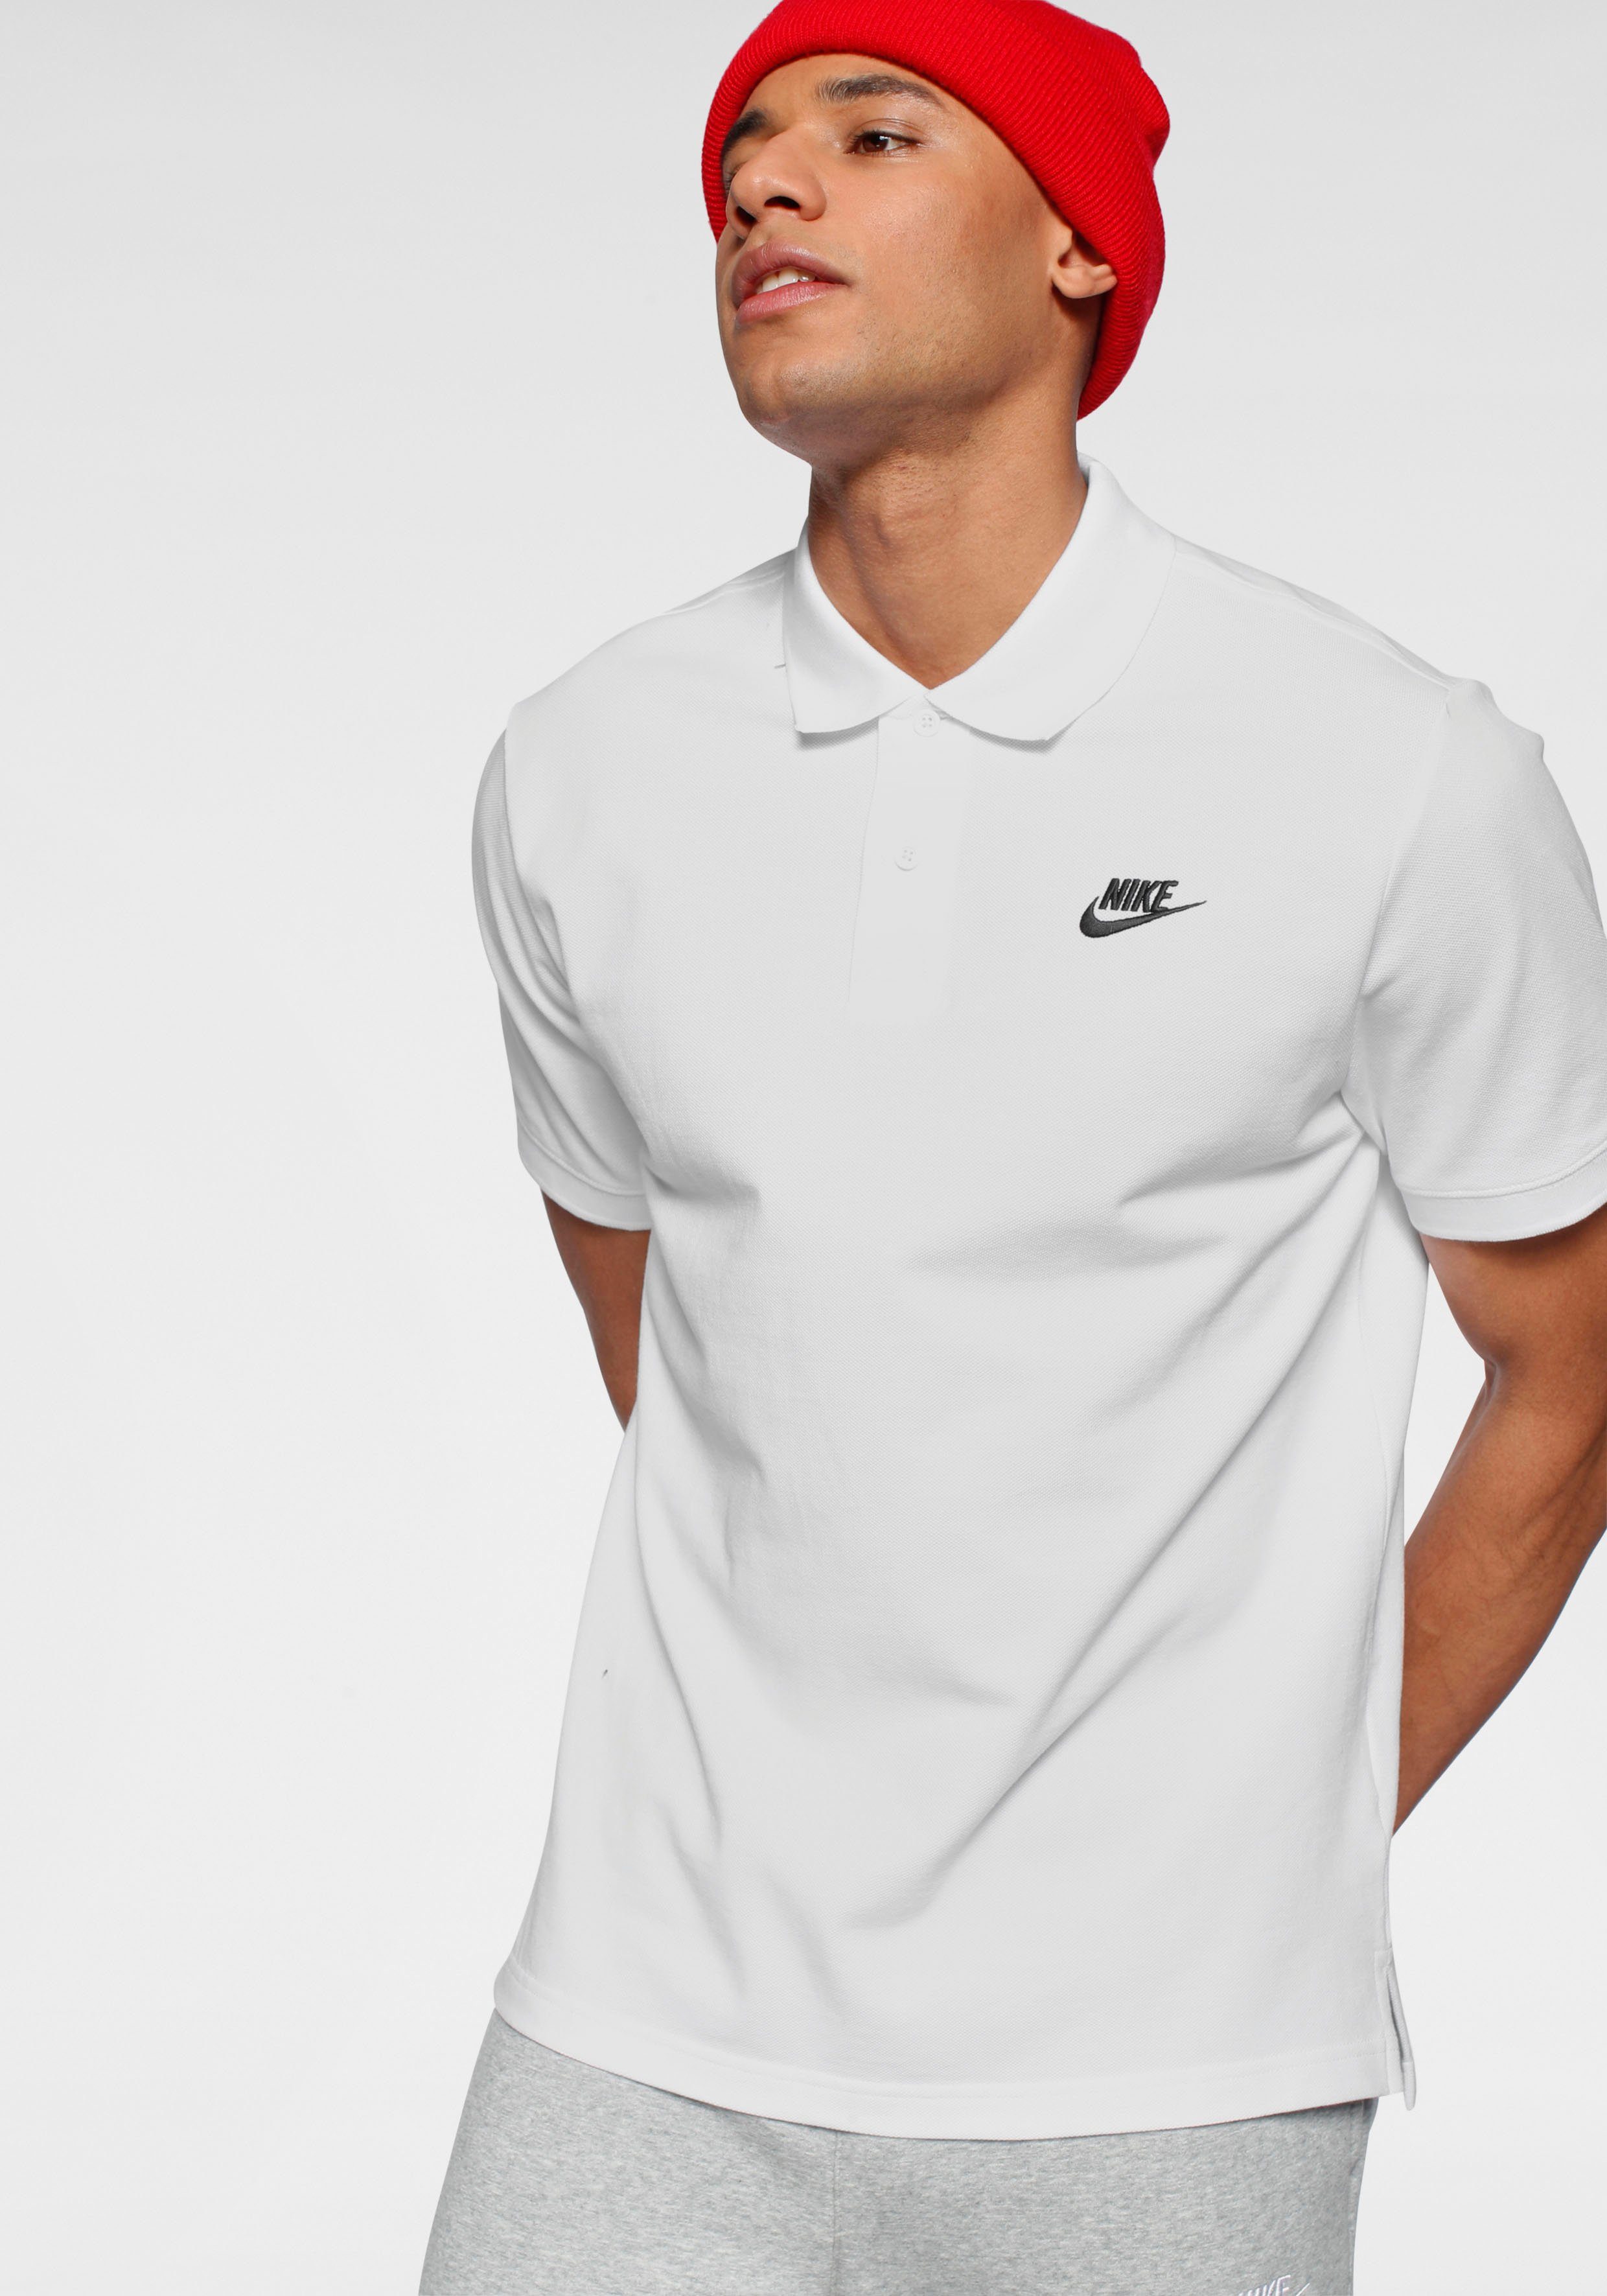 Nike Sportswear Poloshirt Men's Polo weiß